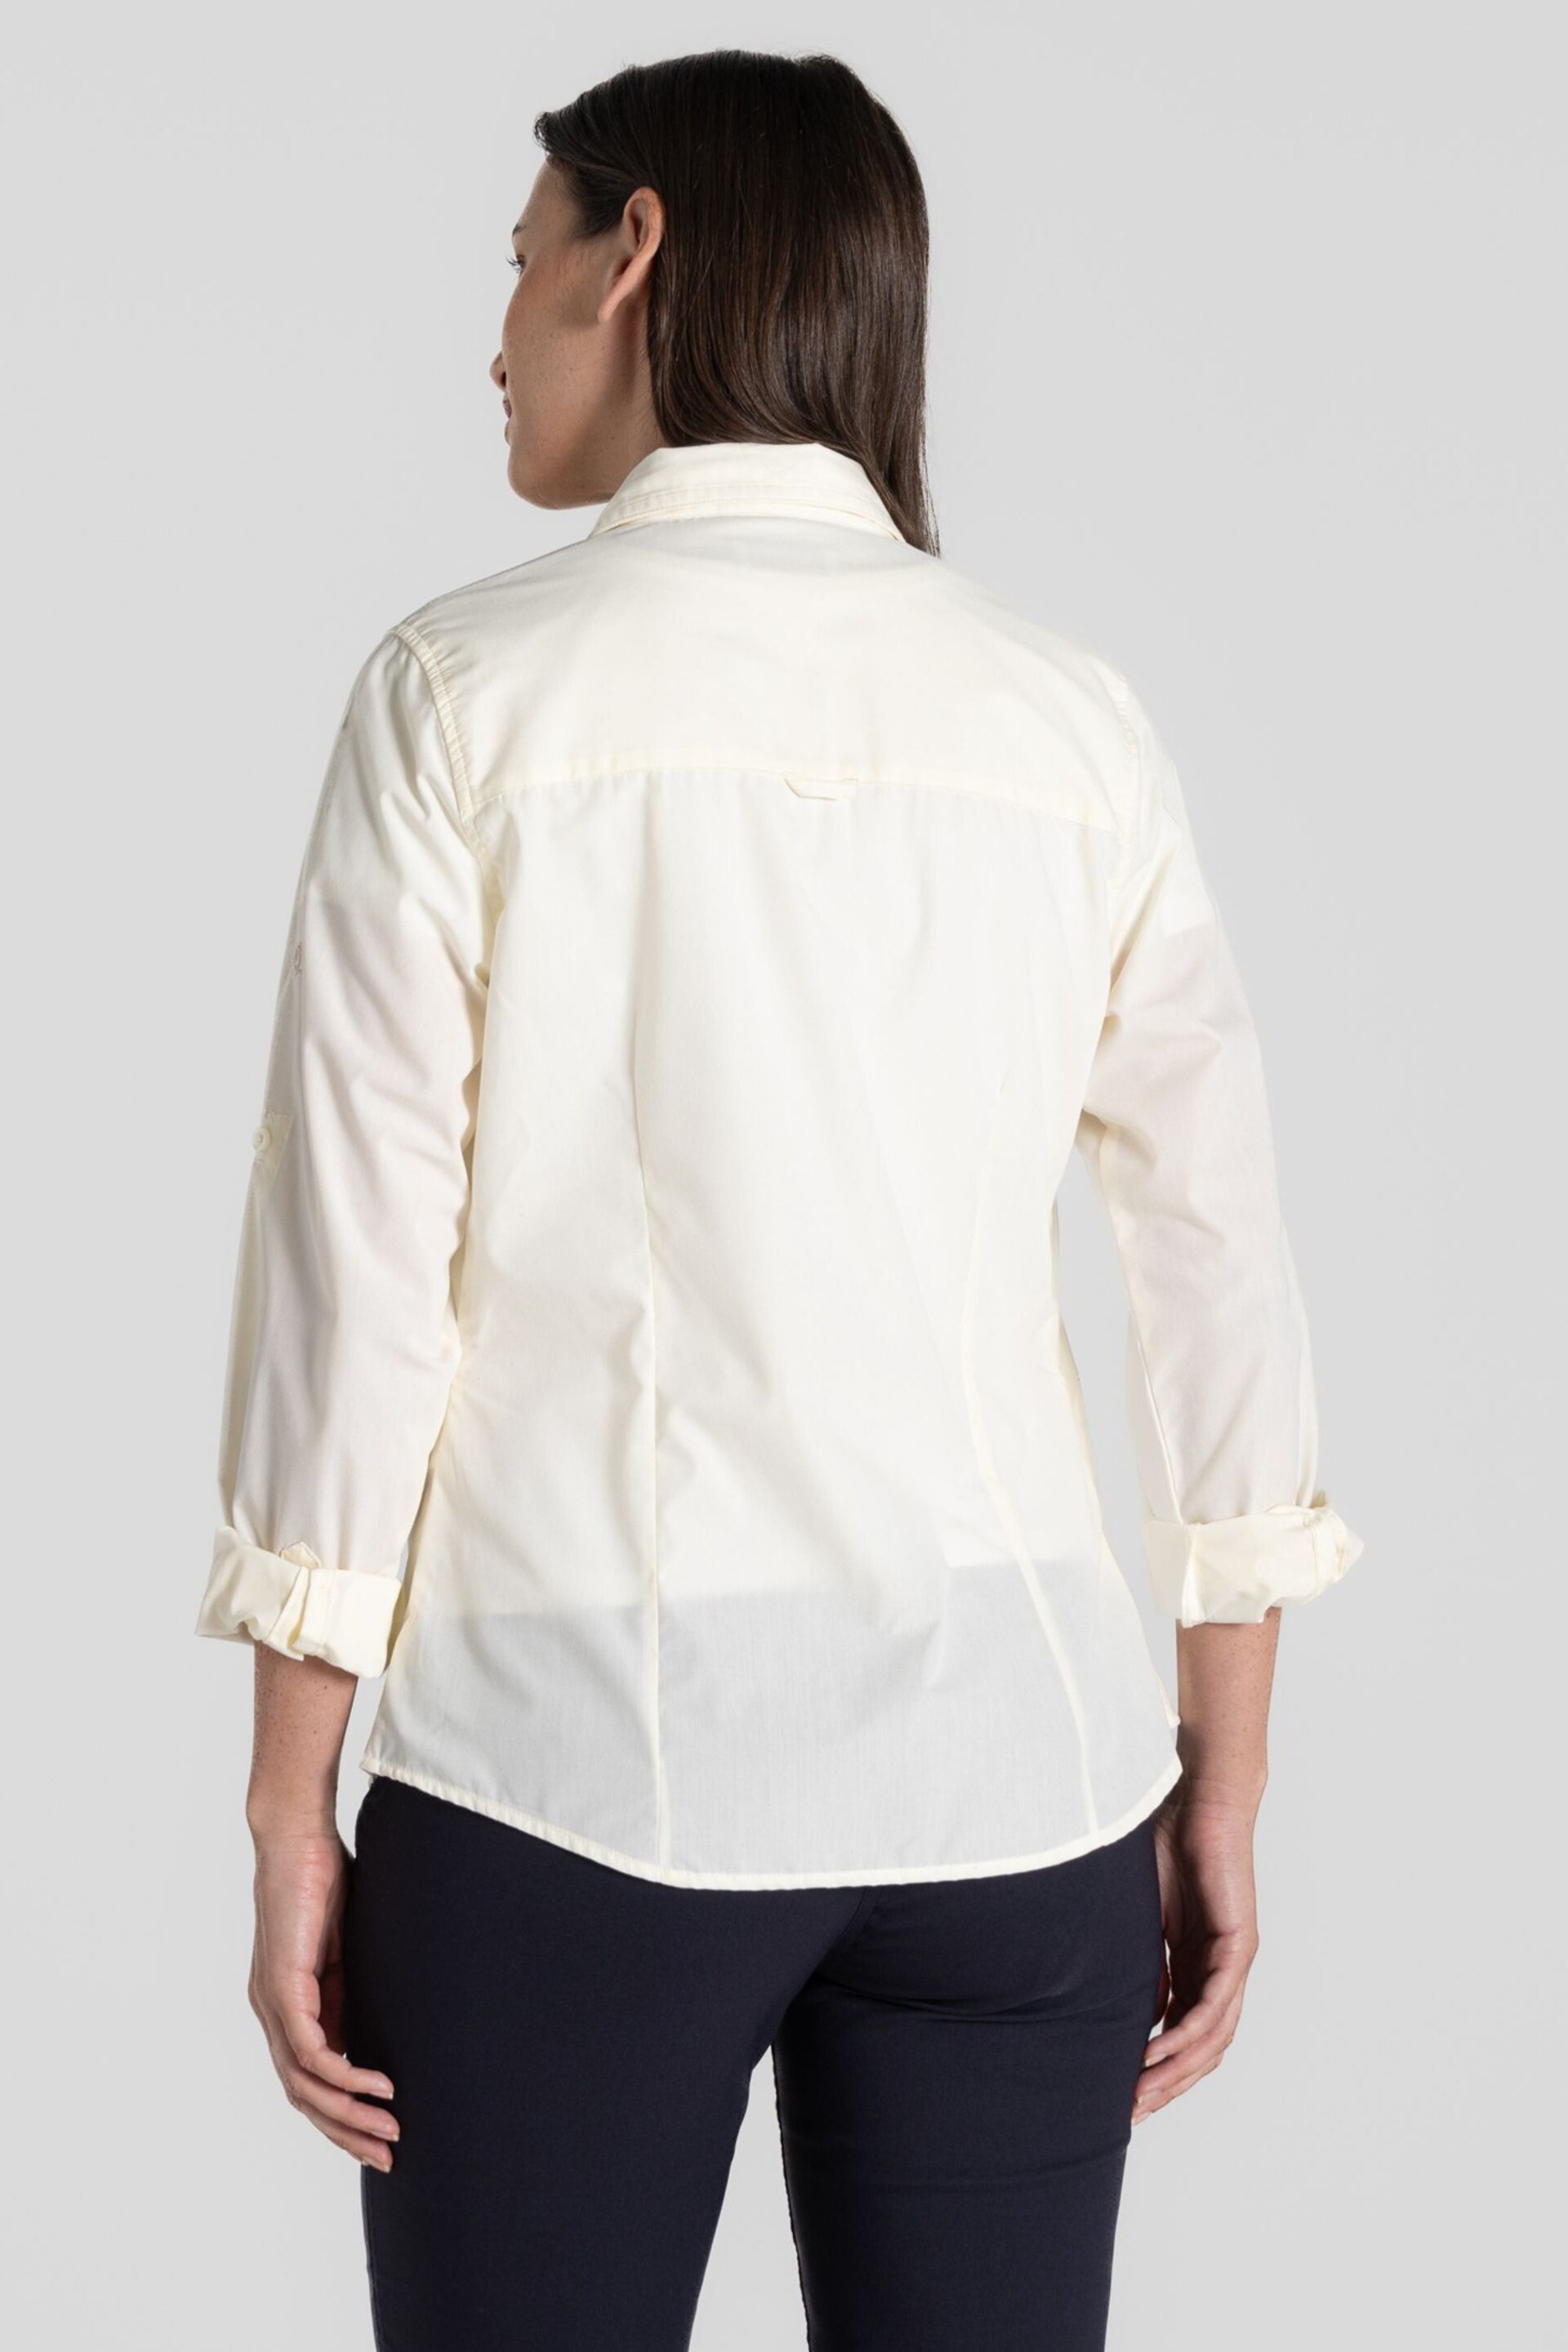 Craghoppers Kiwi Long Sleeved White Shirt - Image 6 of 8